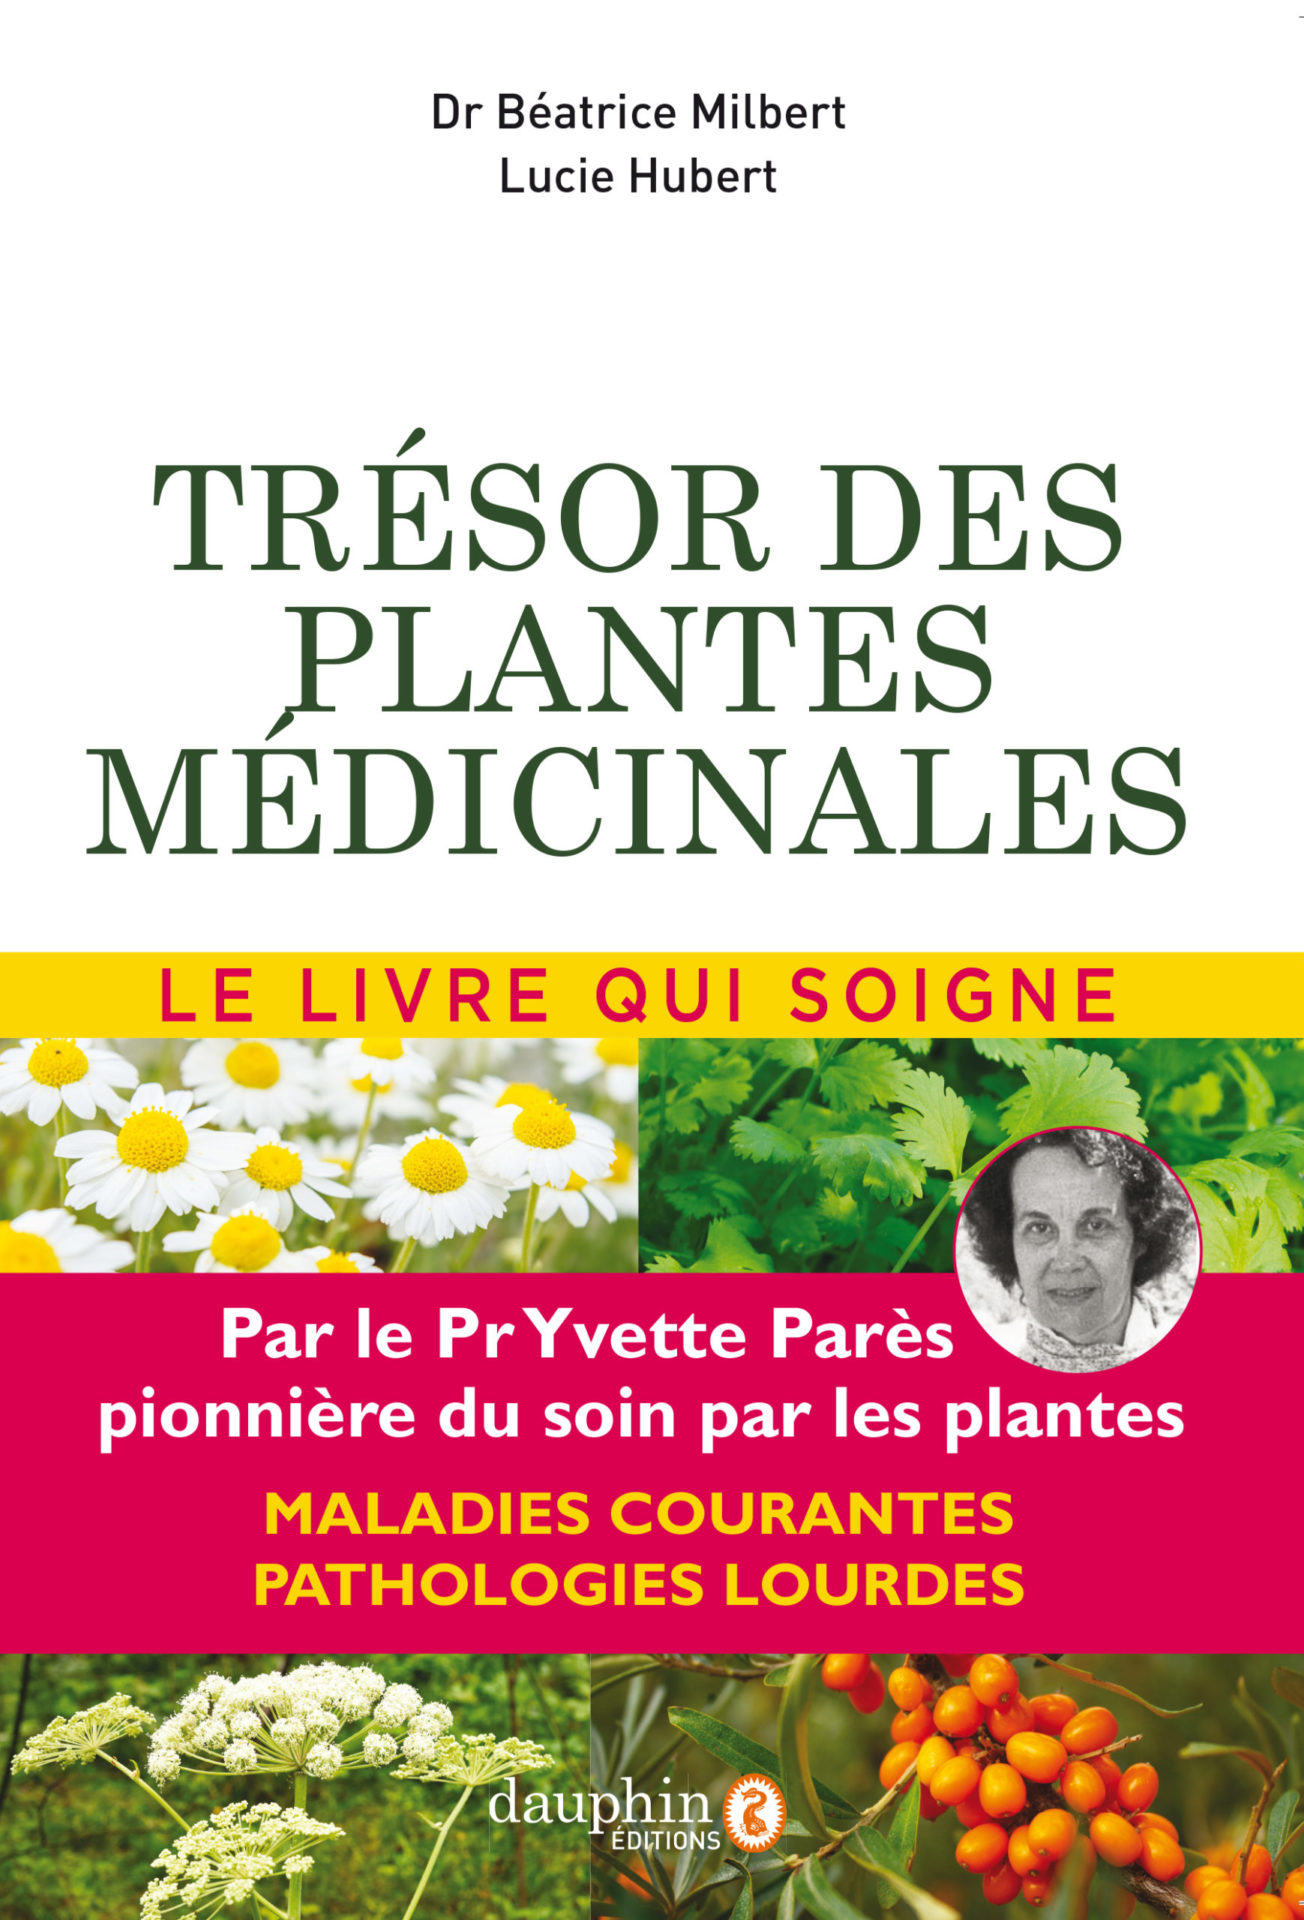 Trésor des plantes médicinales - Dr Béatrice Milbert - Éditions du